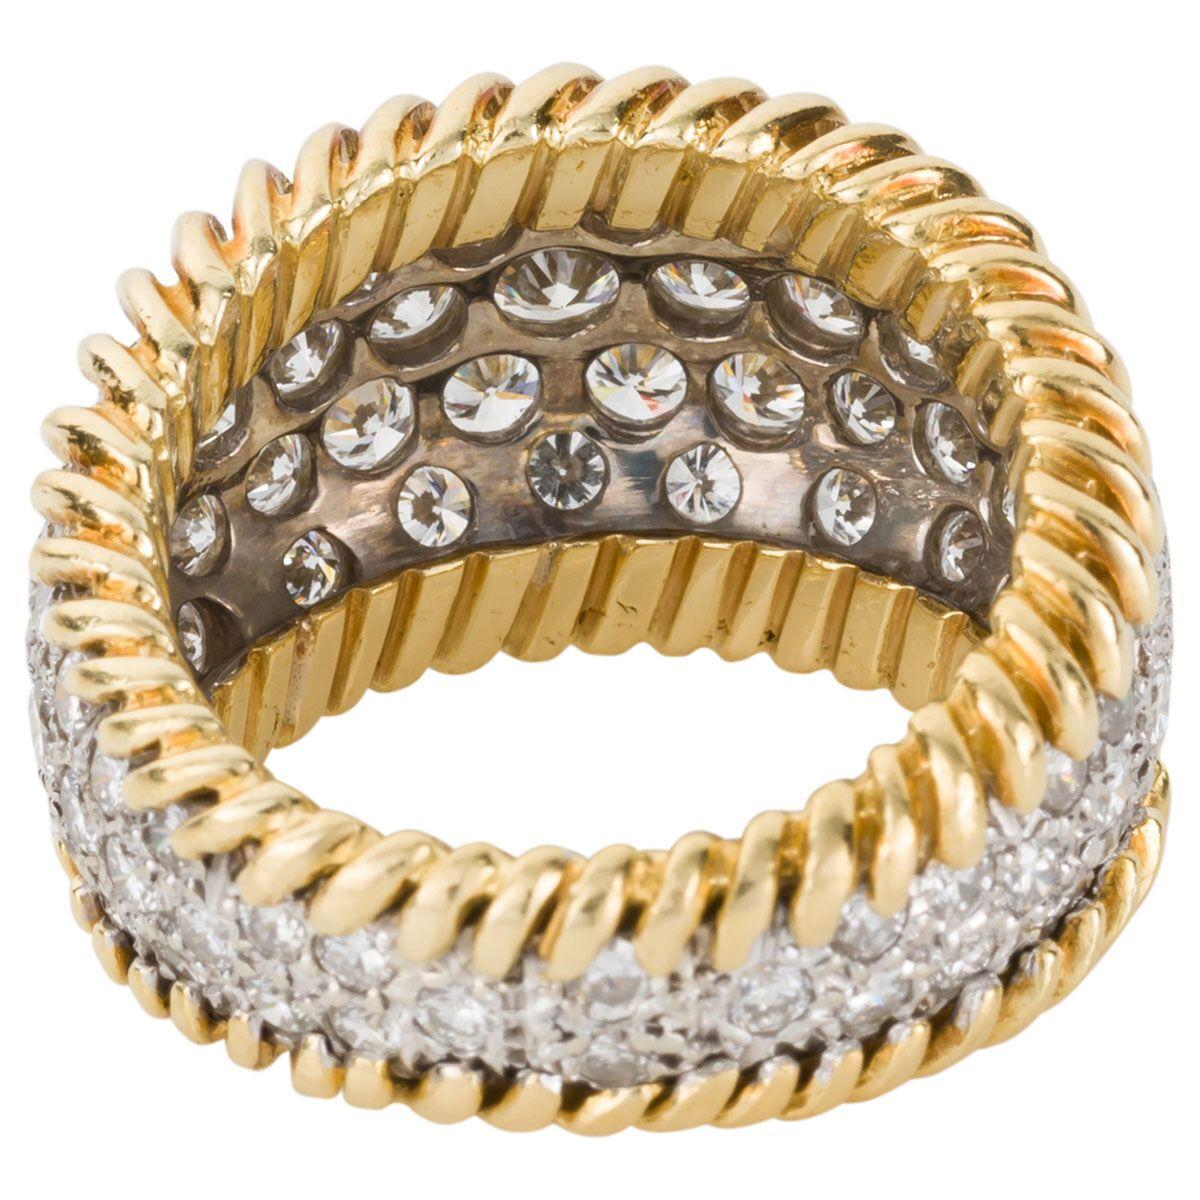 3.00 Carat Diamond Pave Set & 18 Karat Yellow Gold Ring - Ring Size 5.5 3